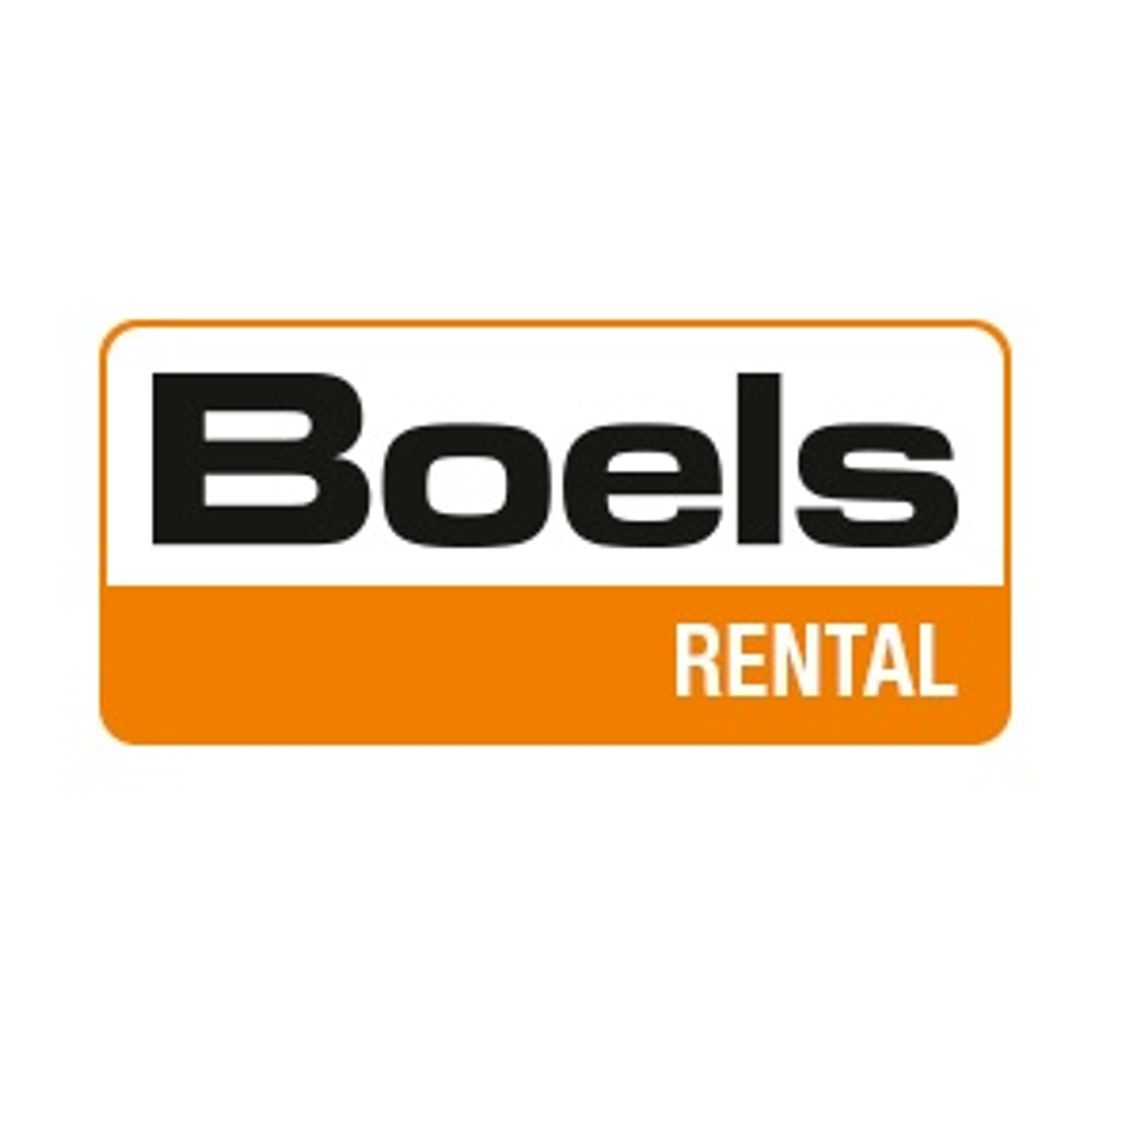 Boels Rental - wynajem koparki